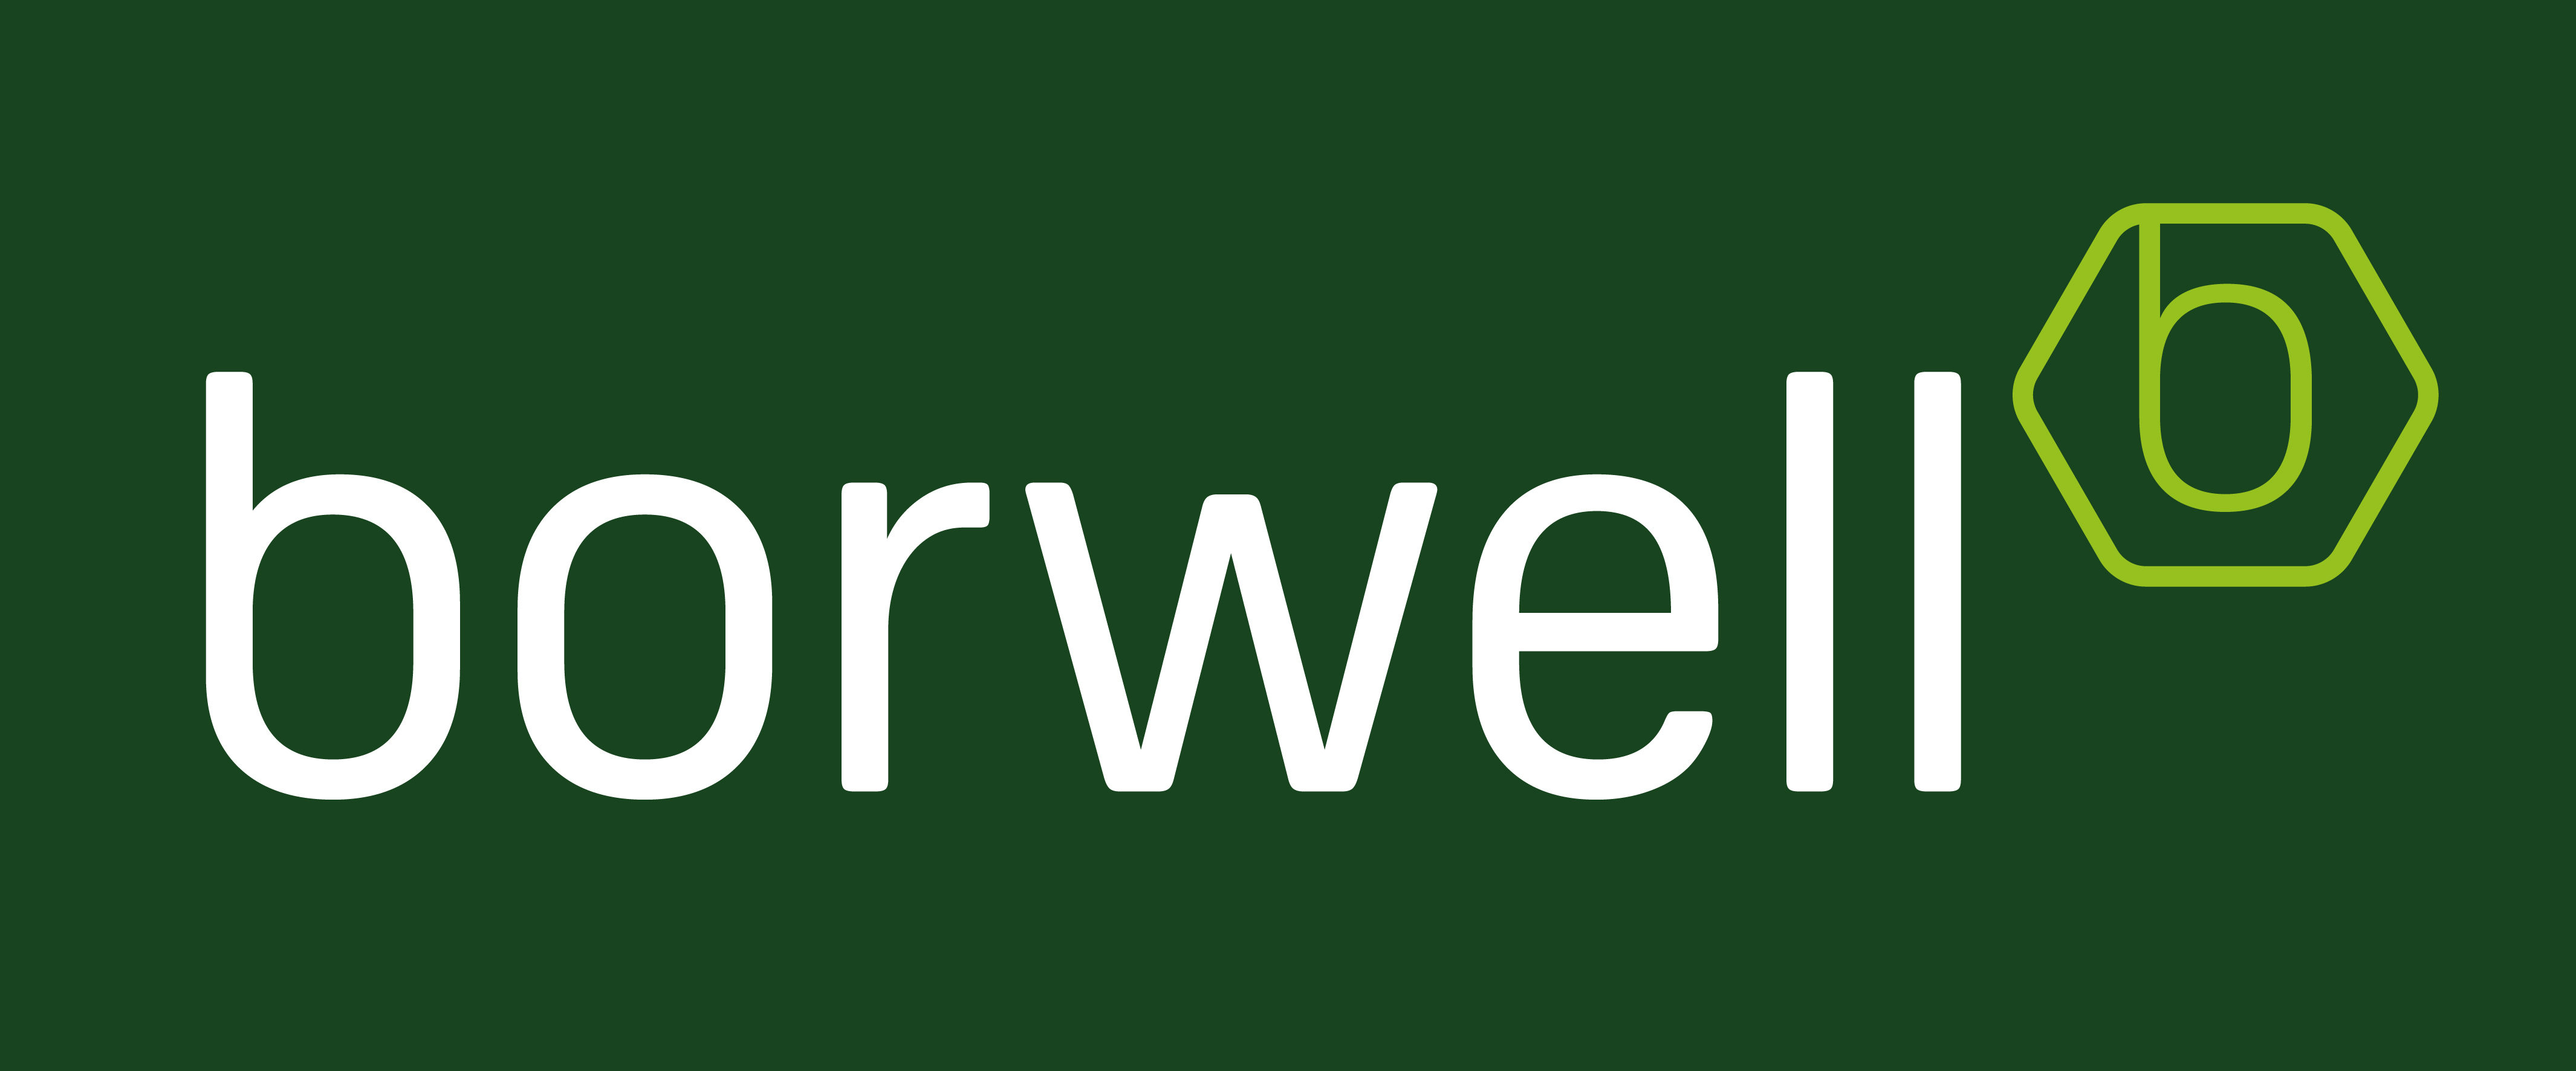 borwell ltd logo